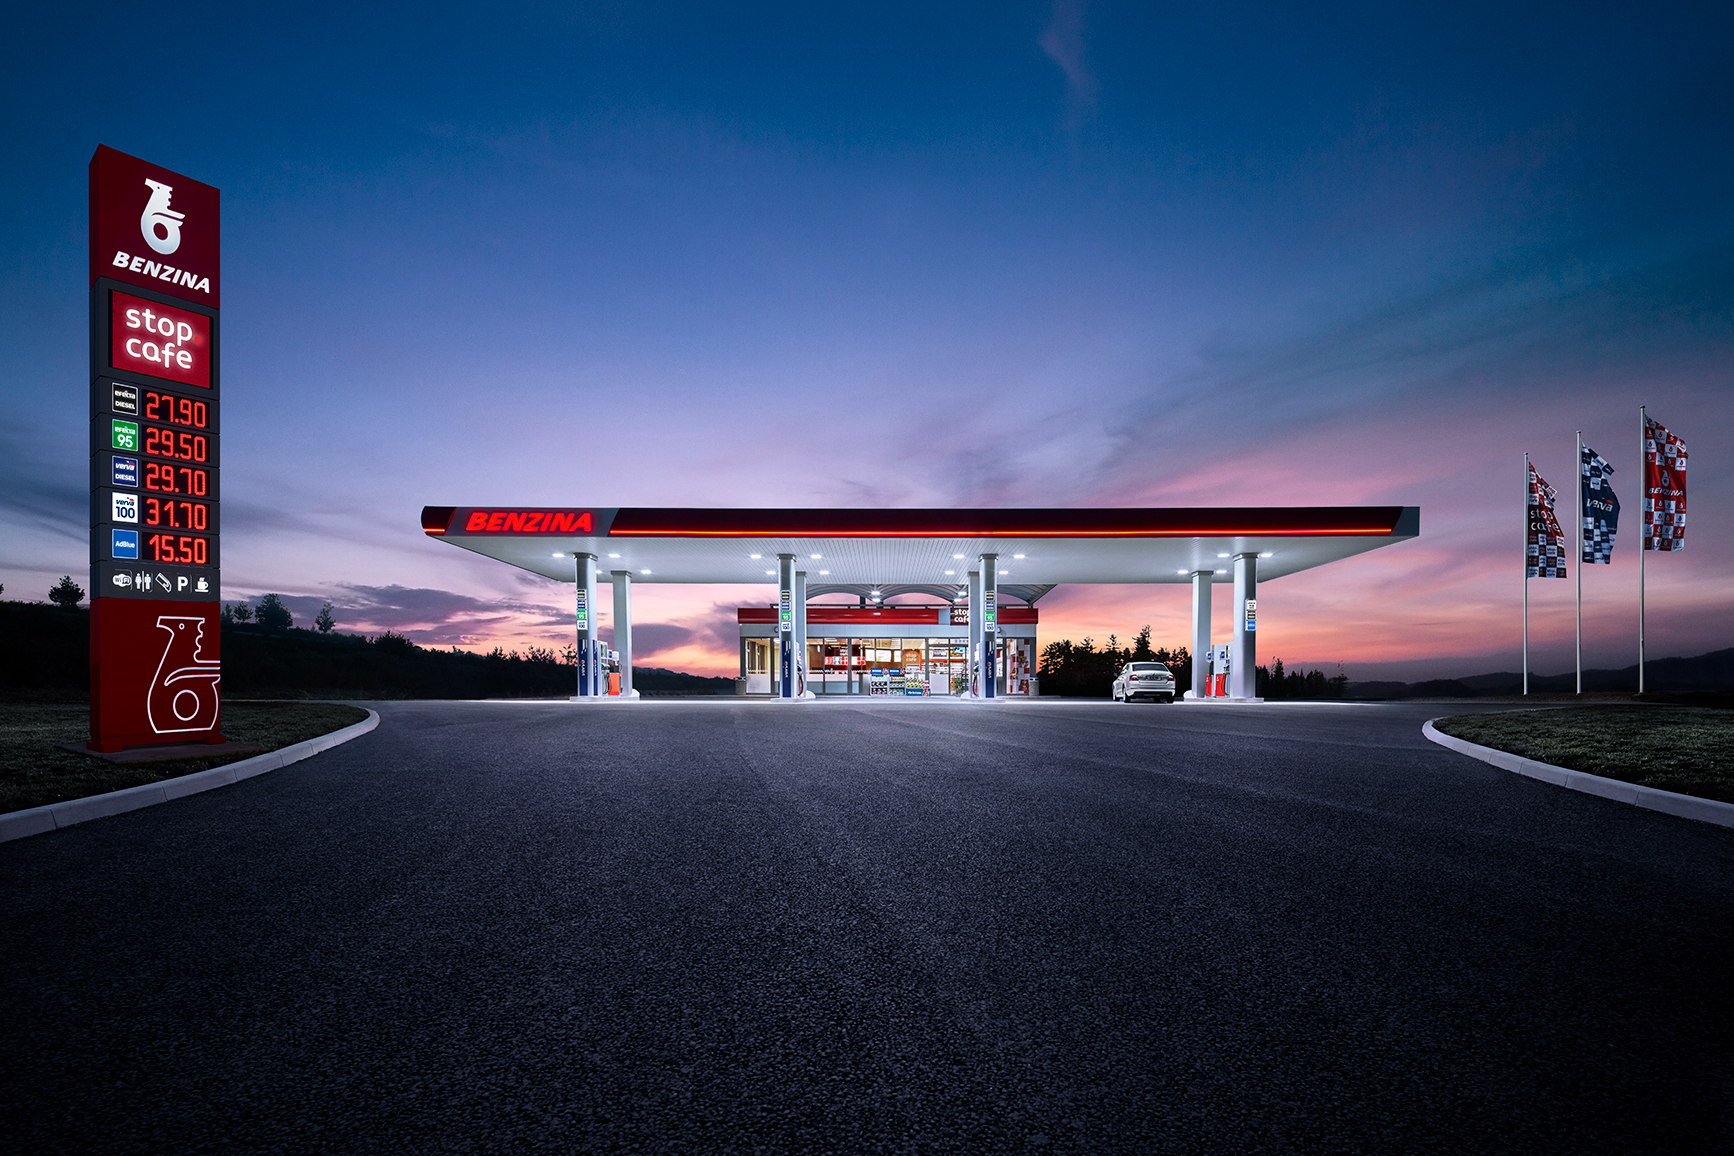 Czeska spółka Orlenu zarządza już siecią 400 stacji paliw. Fot. Benzina